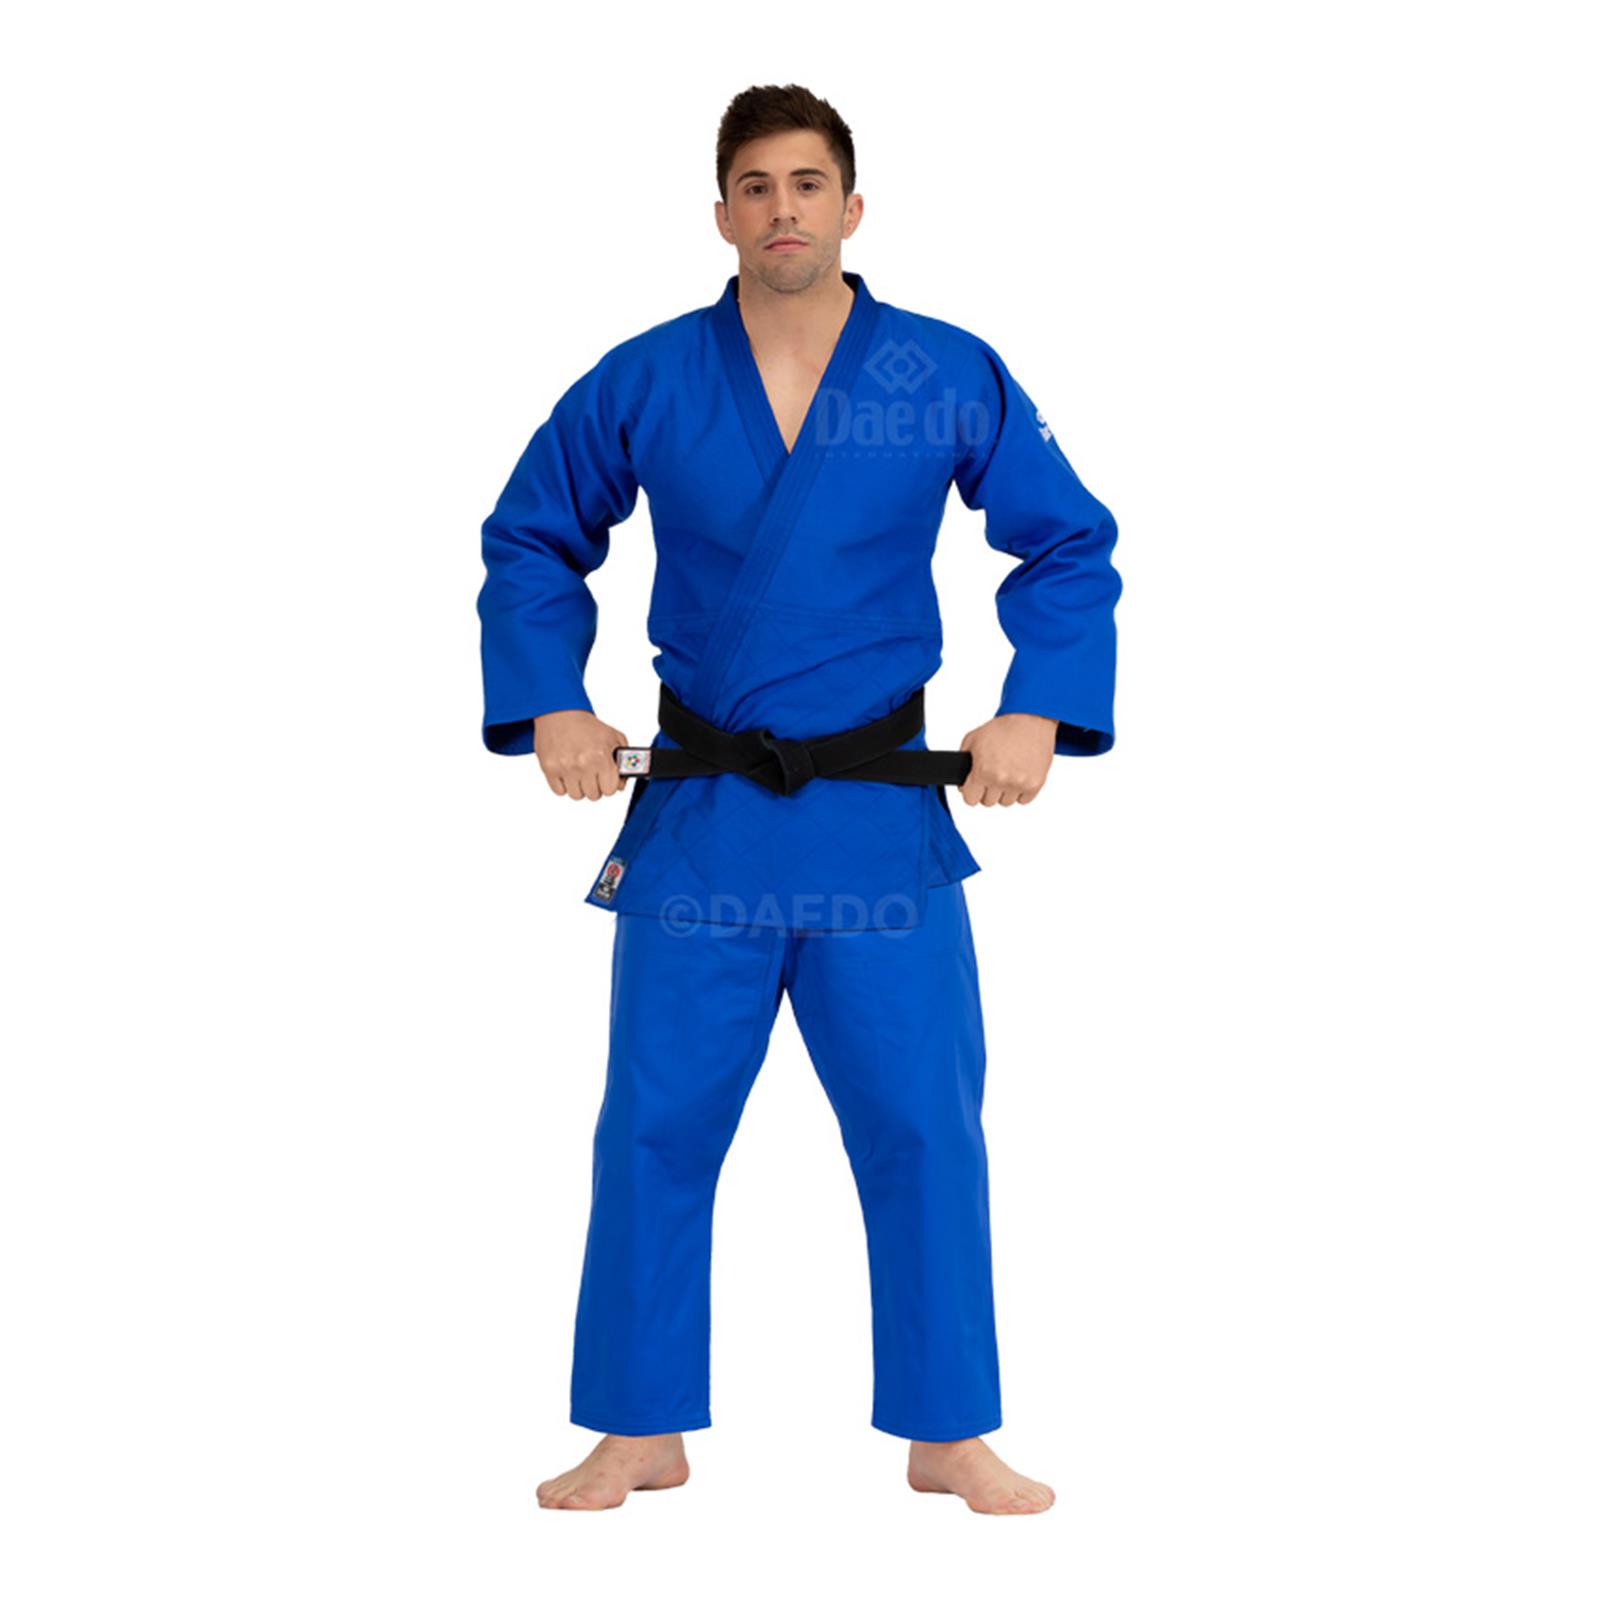 Dae Do Judogi da Competizione Elite az (5° - 180cm - BLU)